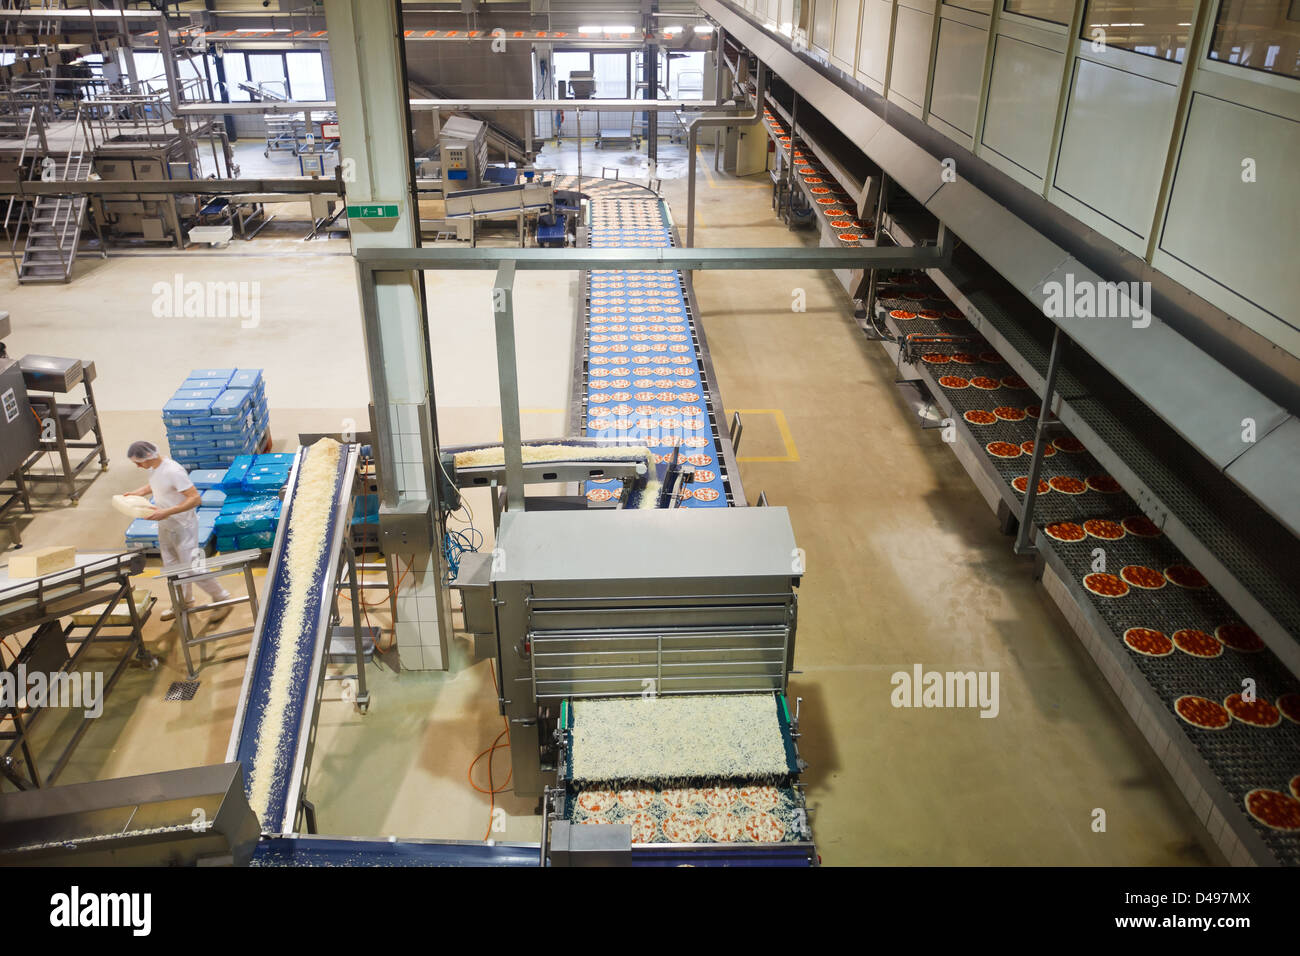 Berlin, Deutschland, die Produktionshalle bei Freiberger Lebensmittel  Stockfotografie - Alamy